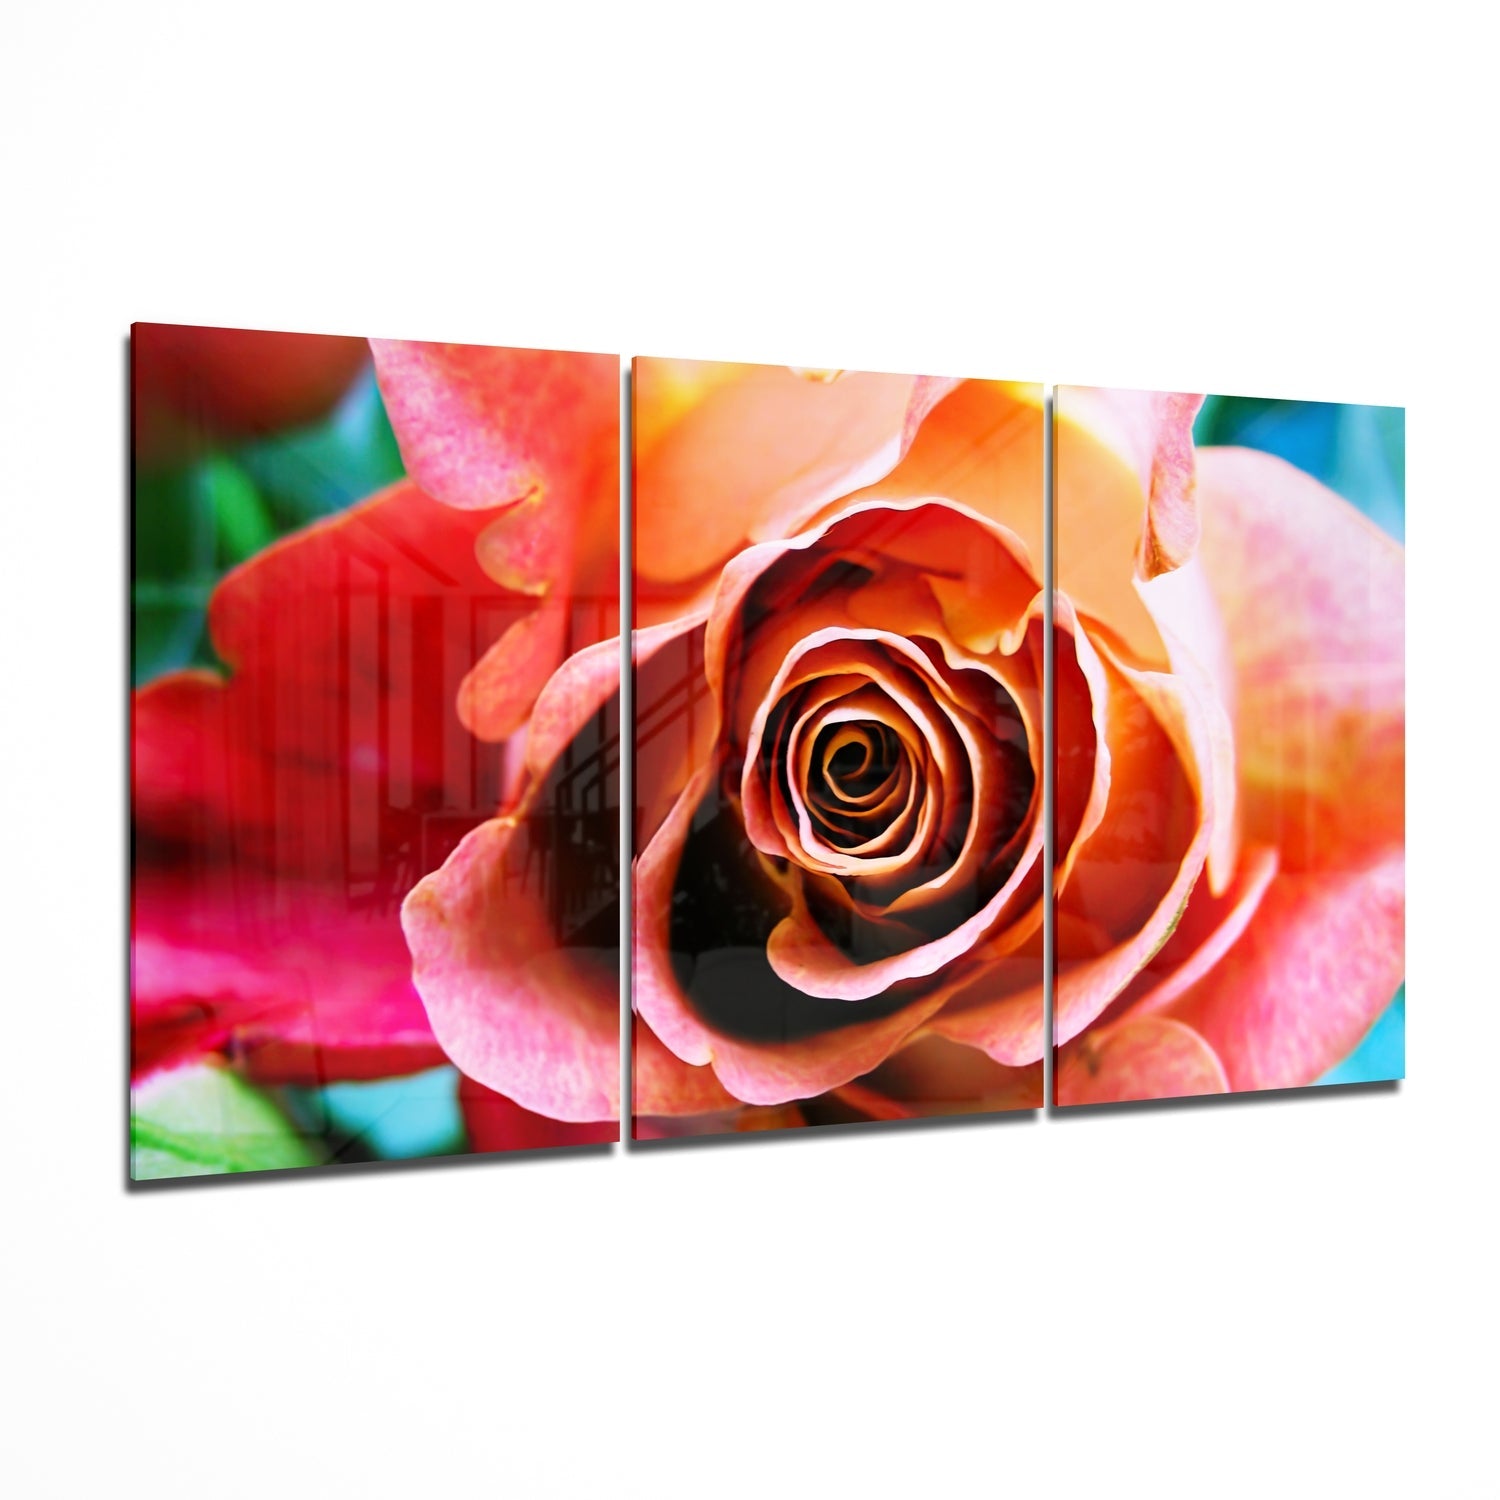 Rose Glass Wall Art | Insigne Art Design